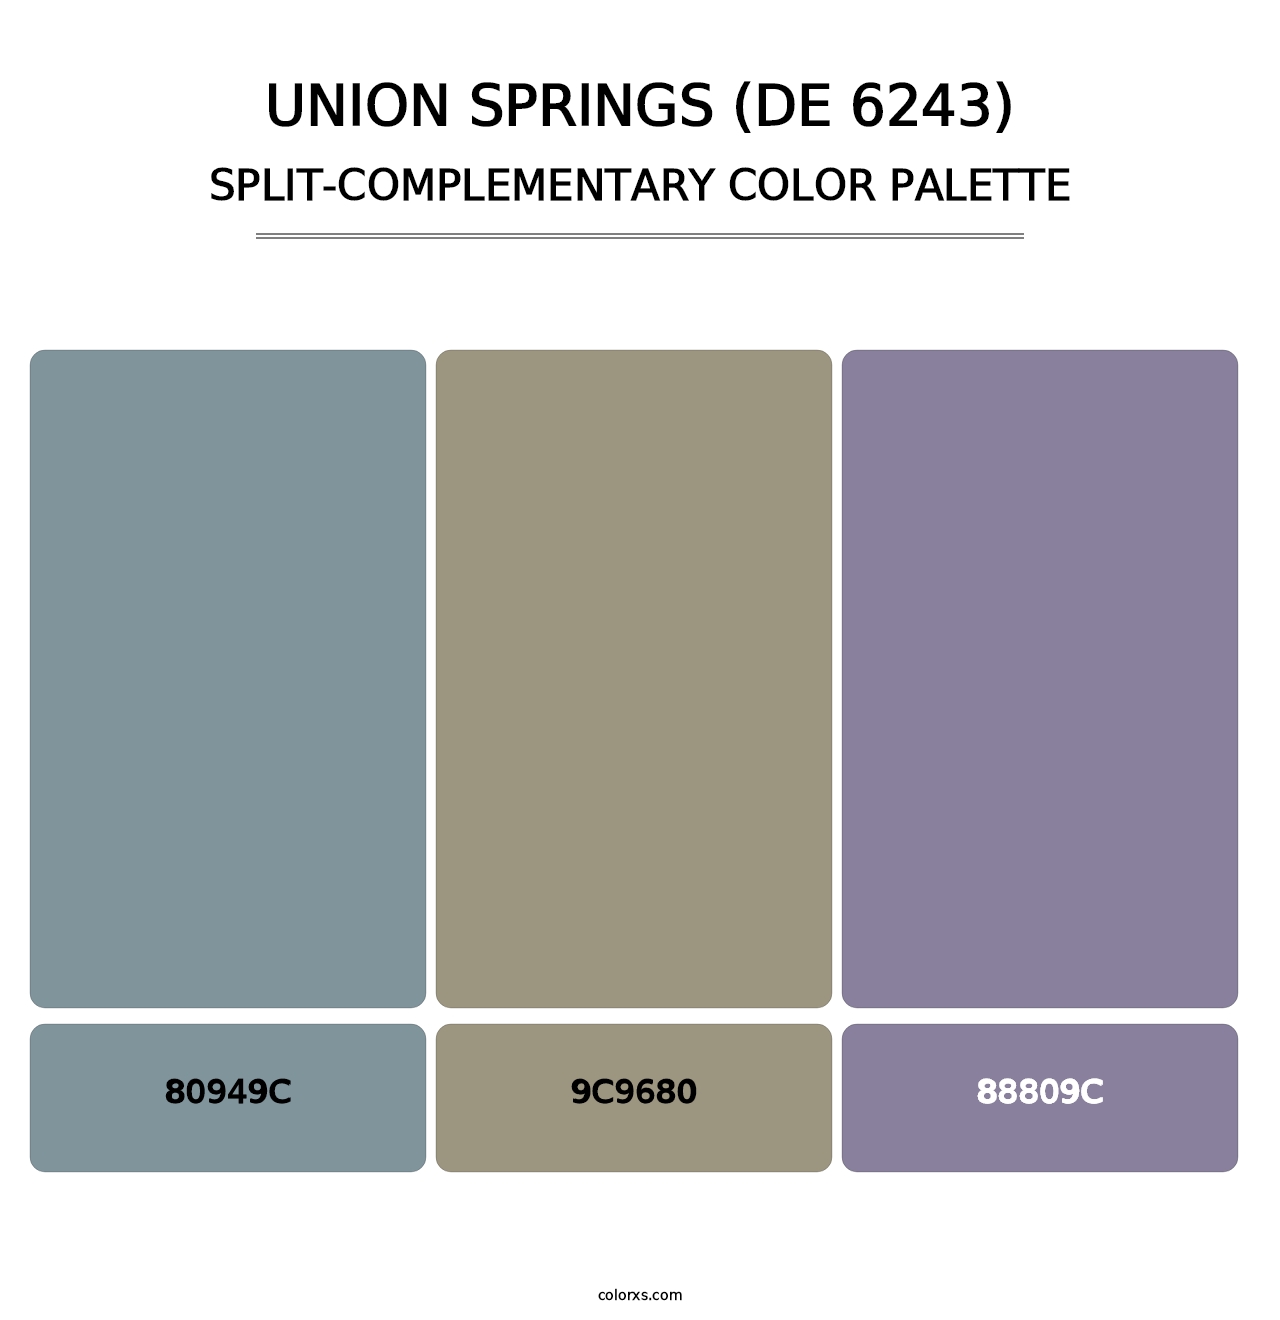 Union Springs (DE 6243) - Split-Complementary Color Palette